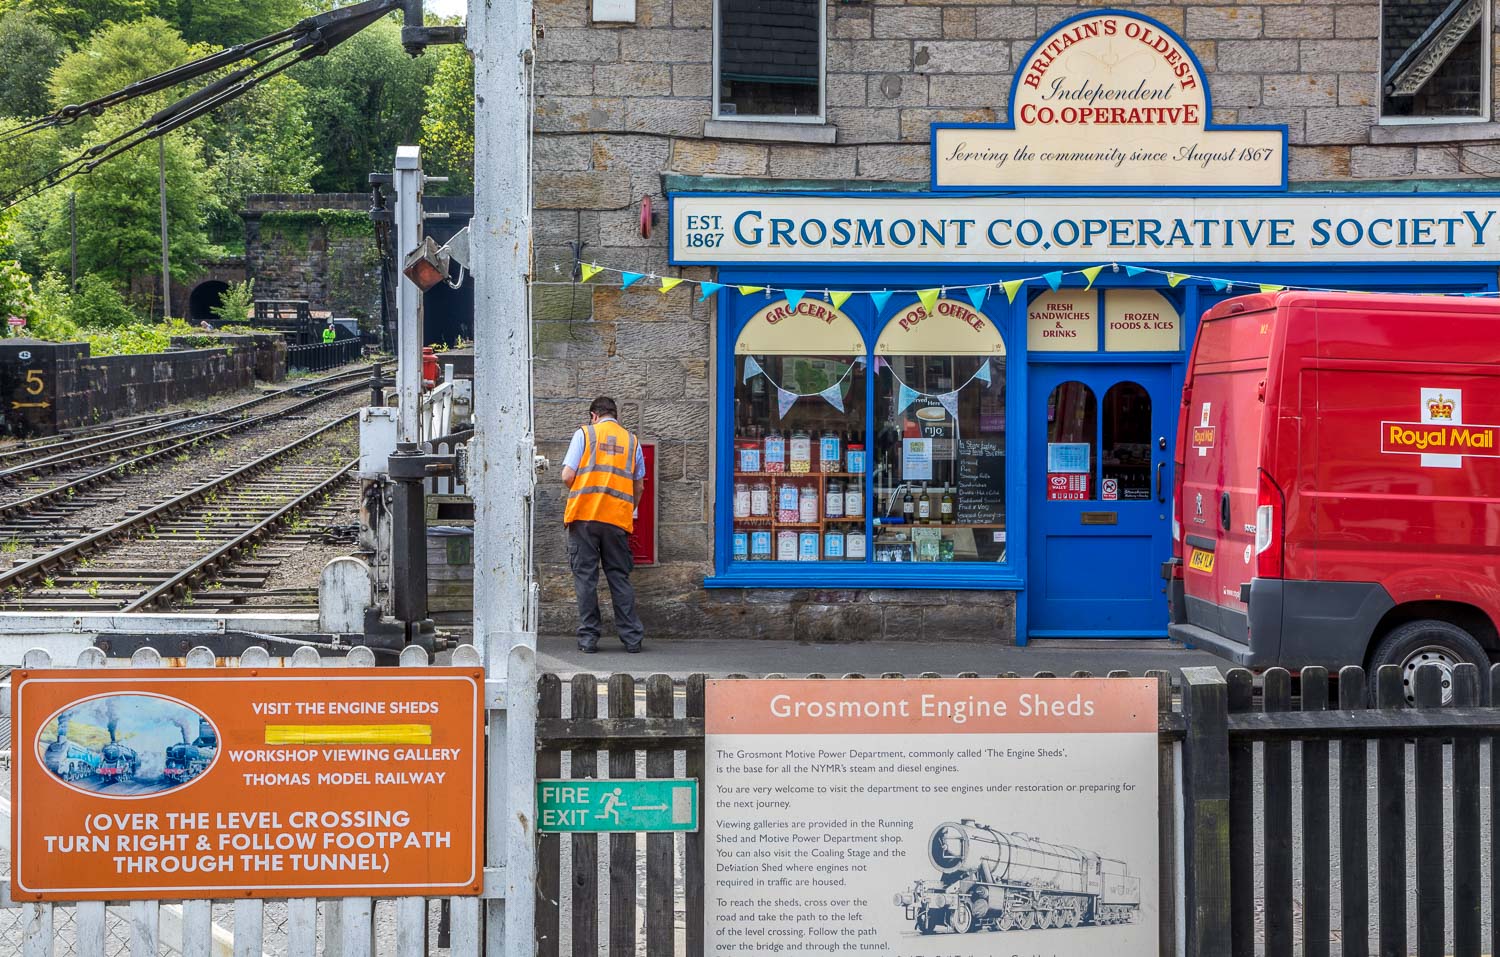 Grosmont Station